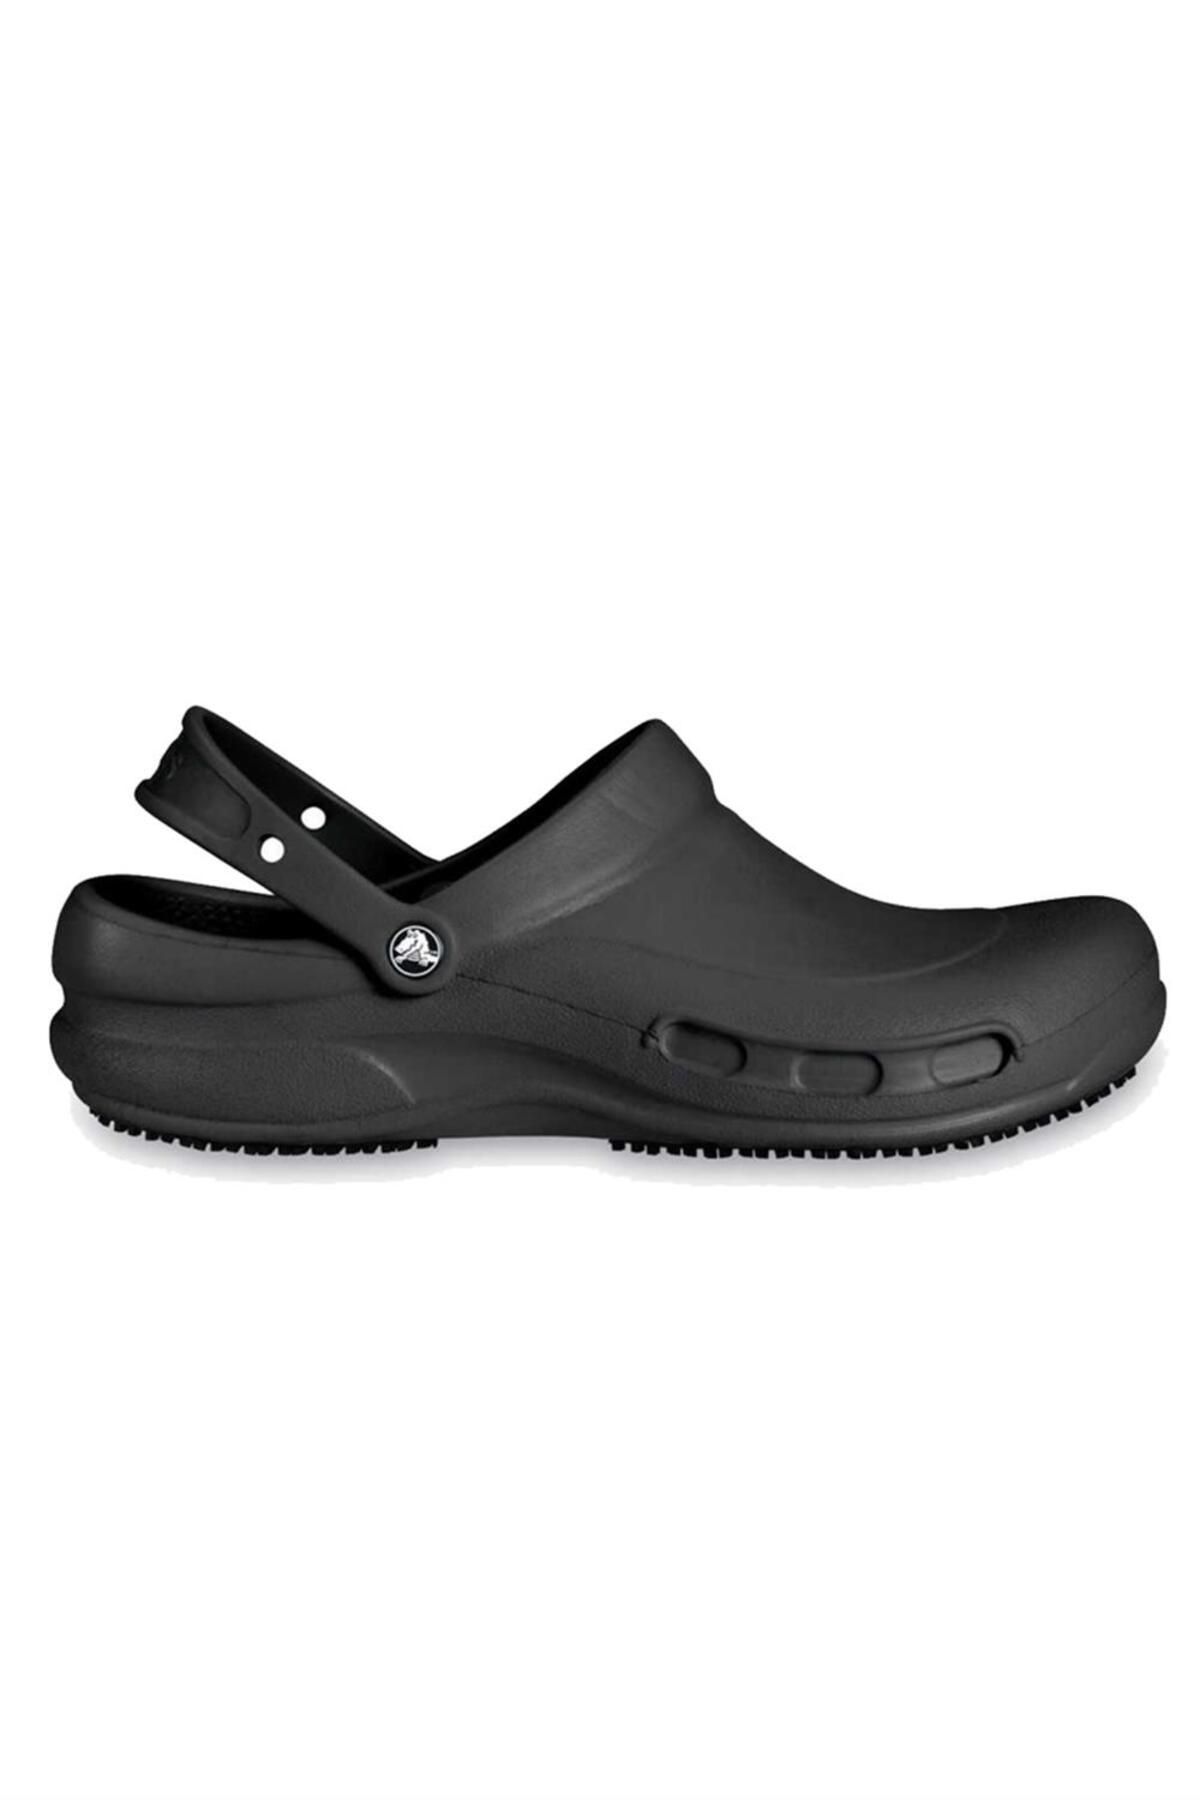 Crocs Bistro Sandalet 10075-001